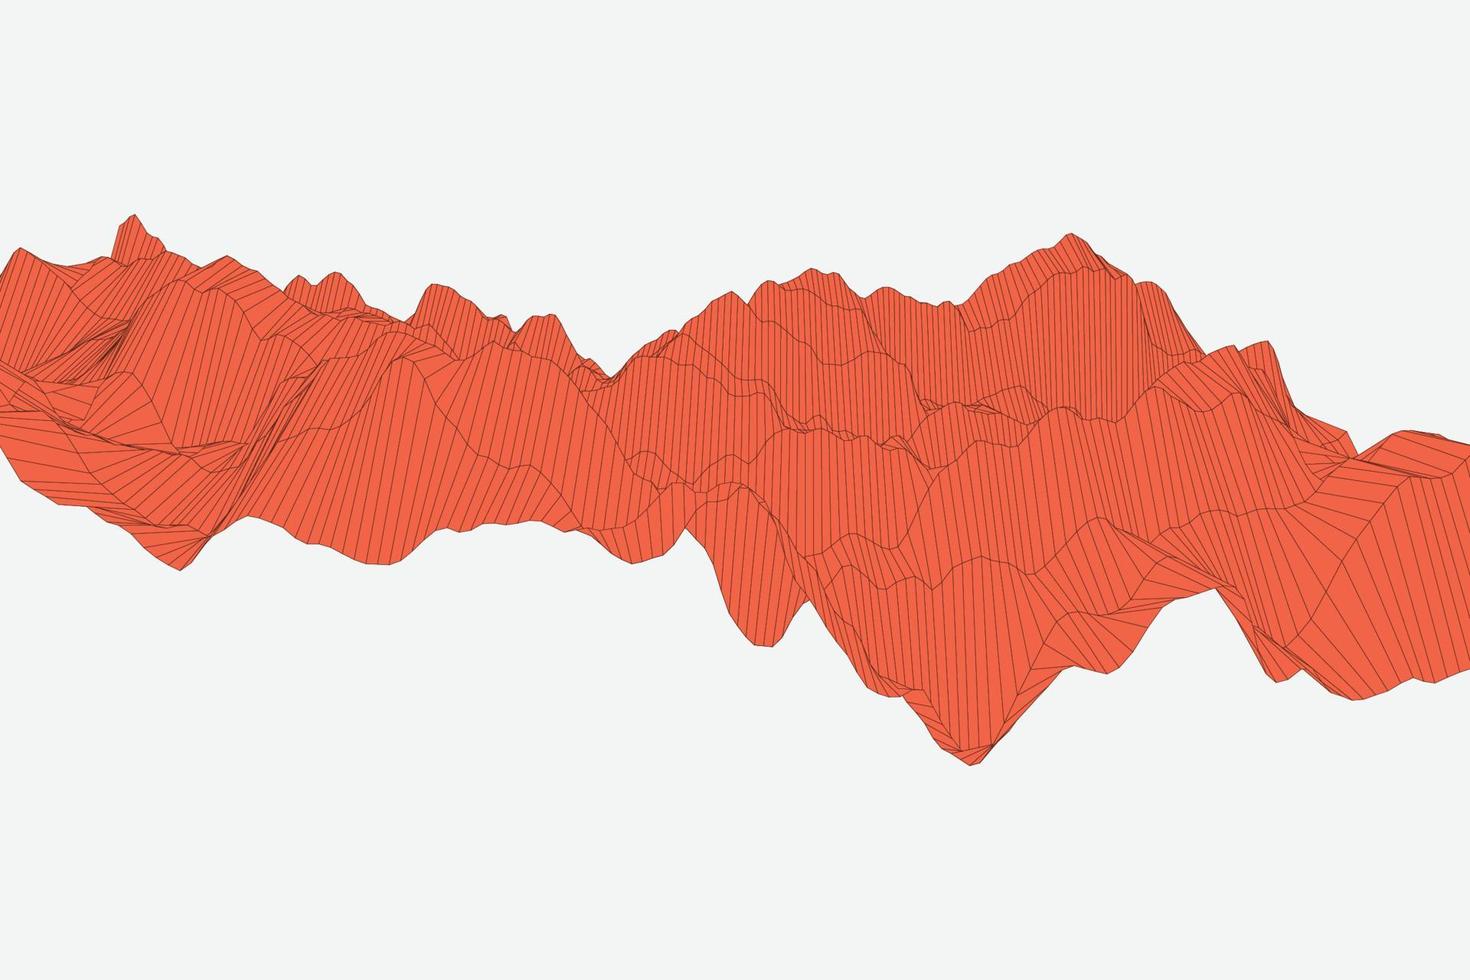 abstrakt röd dynamisk linjär våg design bakgrund. rörelseturbulensstruktur i teknisk futuristisk stil för app, landning, affisch, banner och presentation vektor